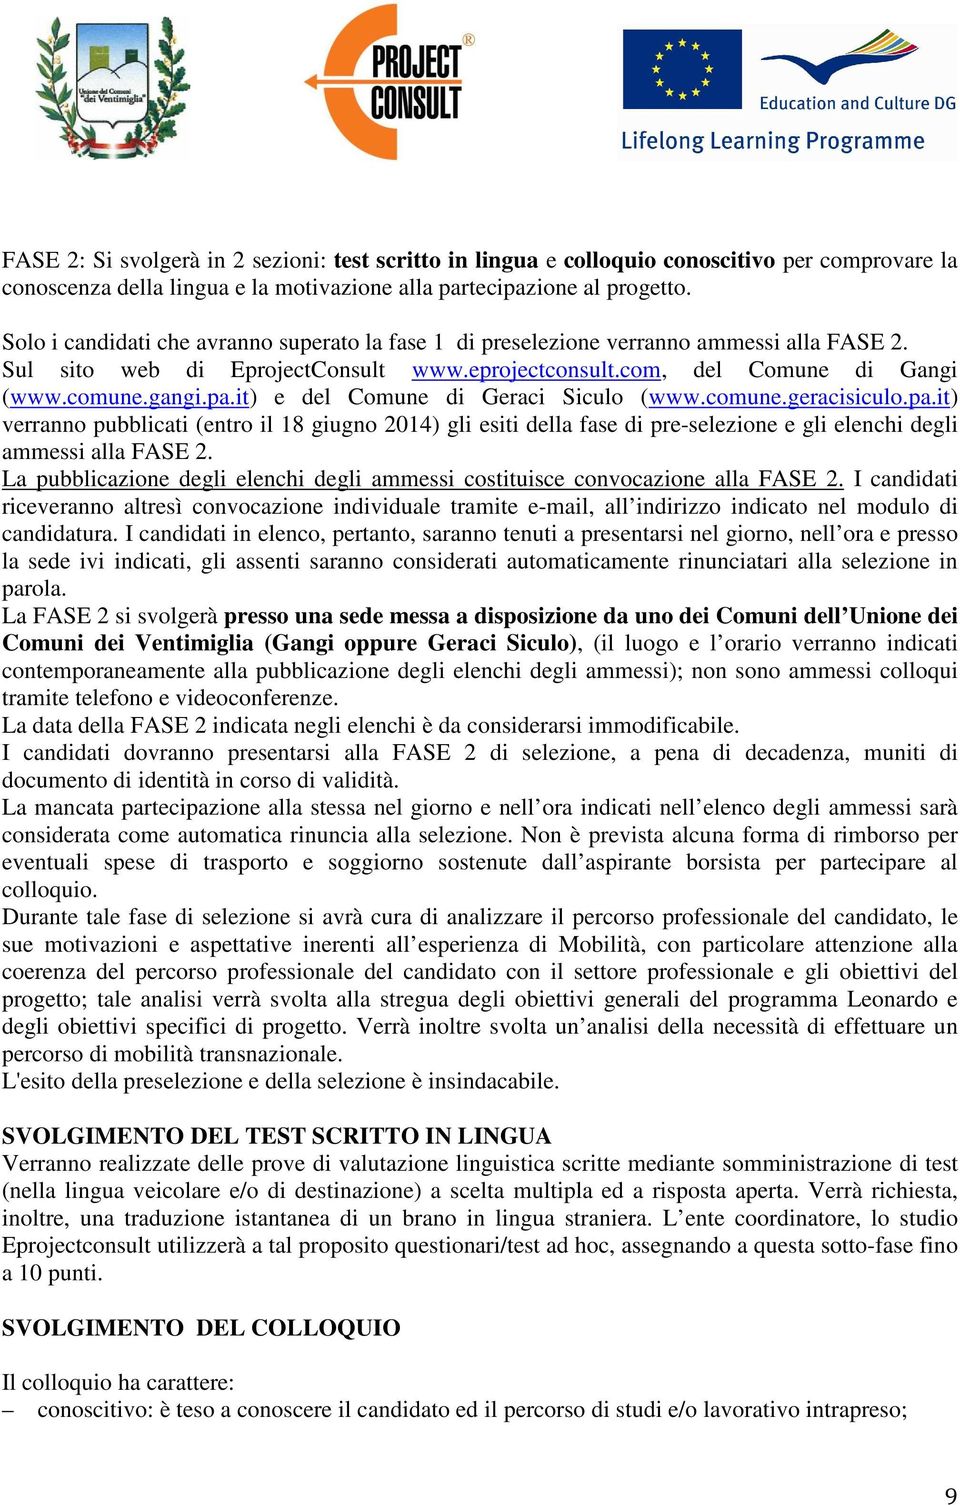 it) e del Comune di Geraci Siculo (www.comune.geracisiculo.pa.it) verranno pubblicati (entro il 18 giugno 2014) gli esiti della fase di pre-selezione e gli elenchi degli ammessi alla FASE 2.